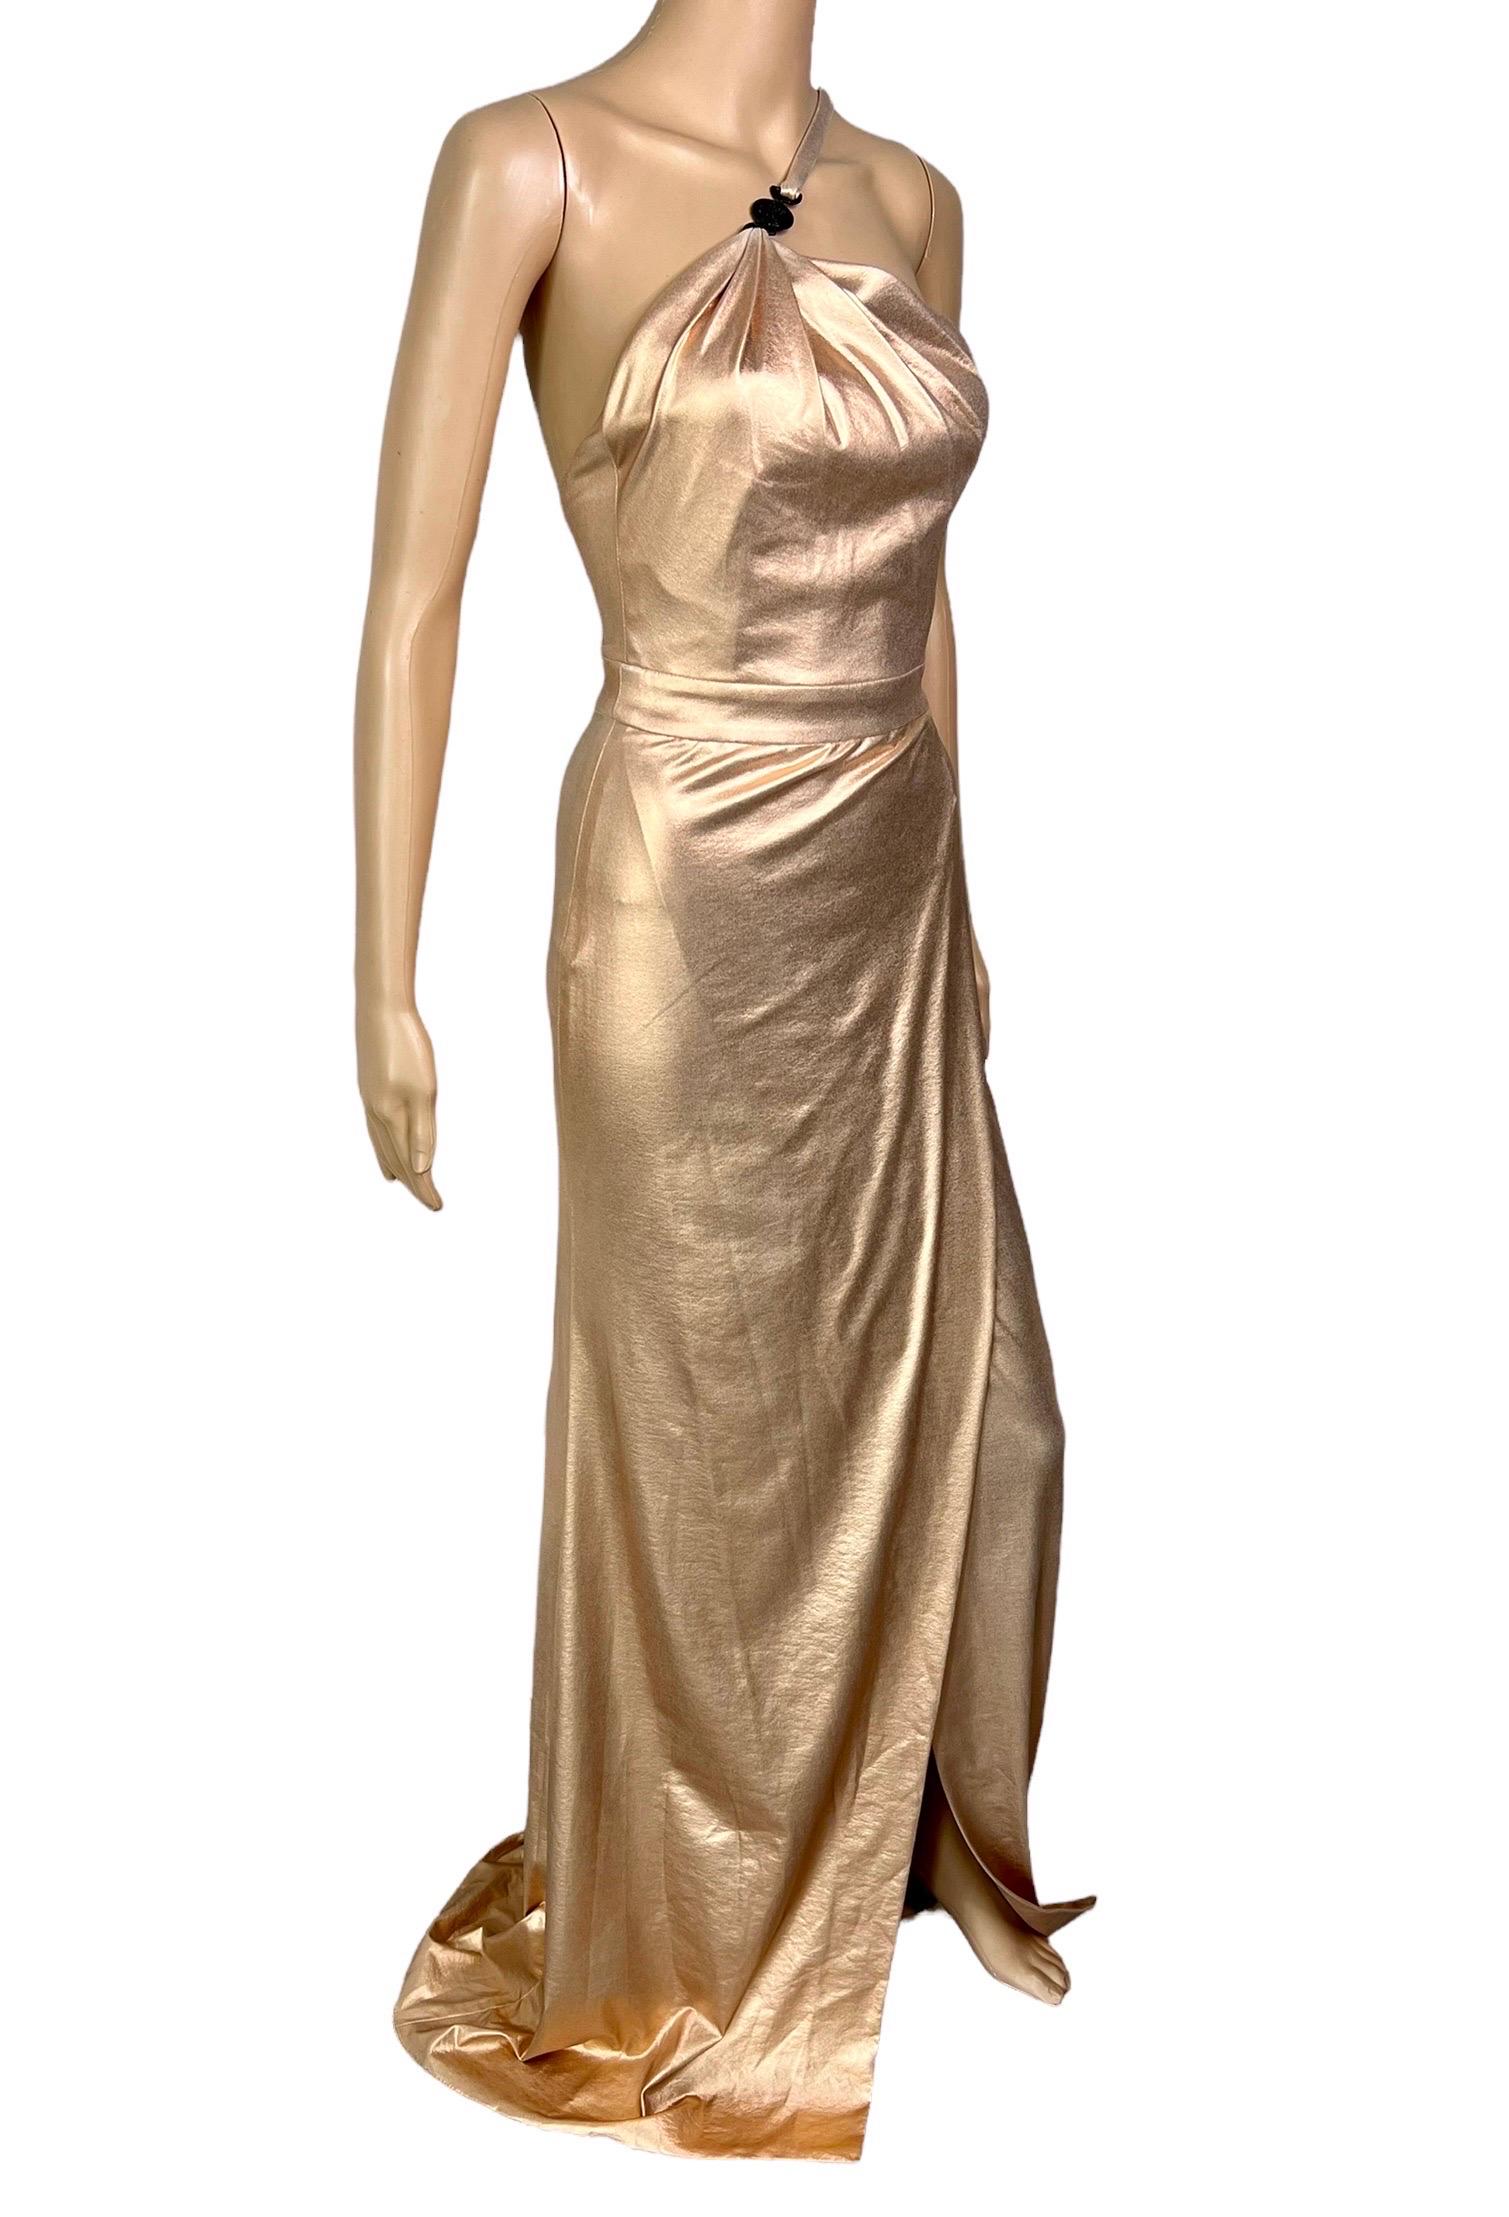 Versace c.2013 Wet Liquid Look Bodycon Metallic Rose Gold Evening Dress Gown For Sale 2